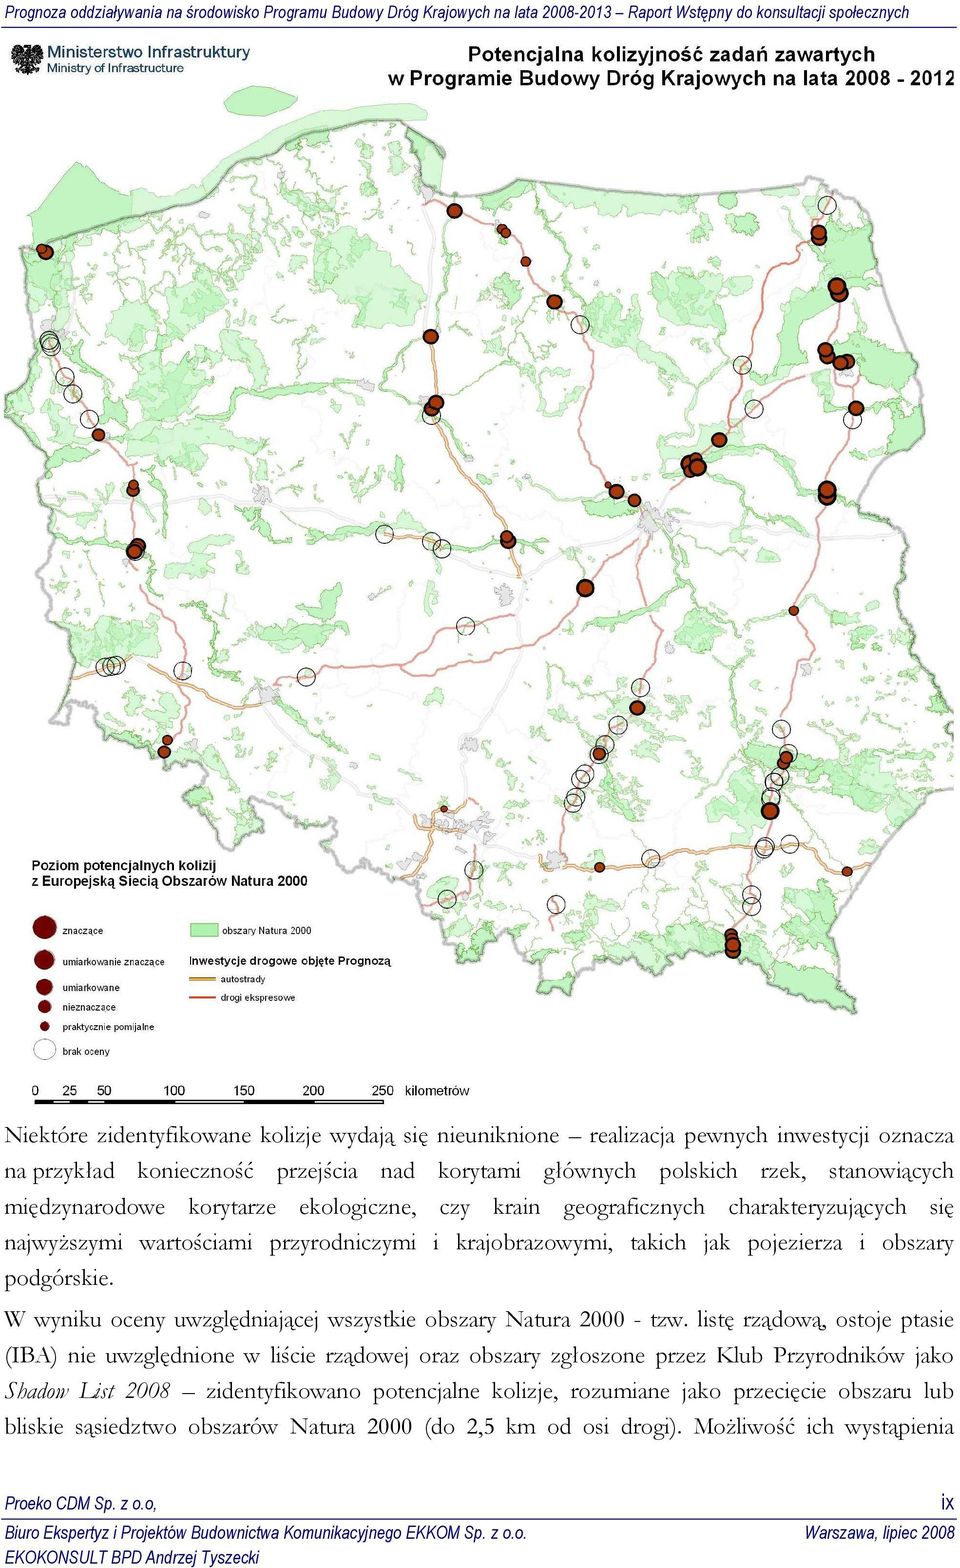 W wyniku oceny uwzględniającej wszystkie obszary Natura 2000 - tzw.